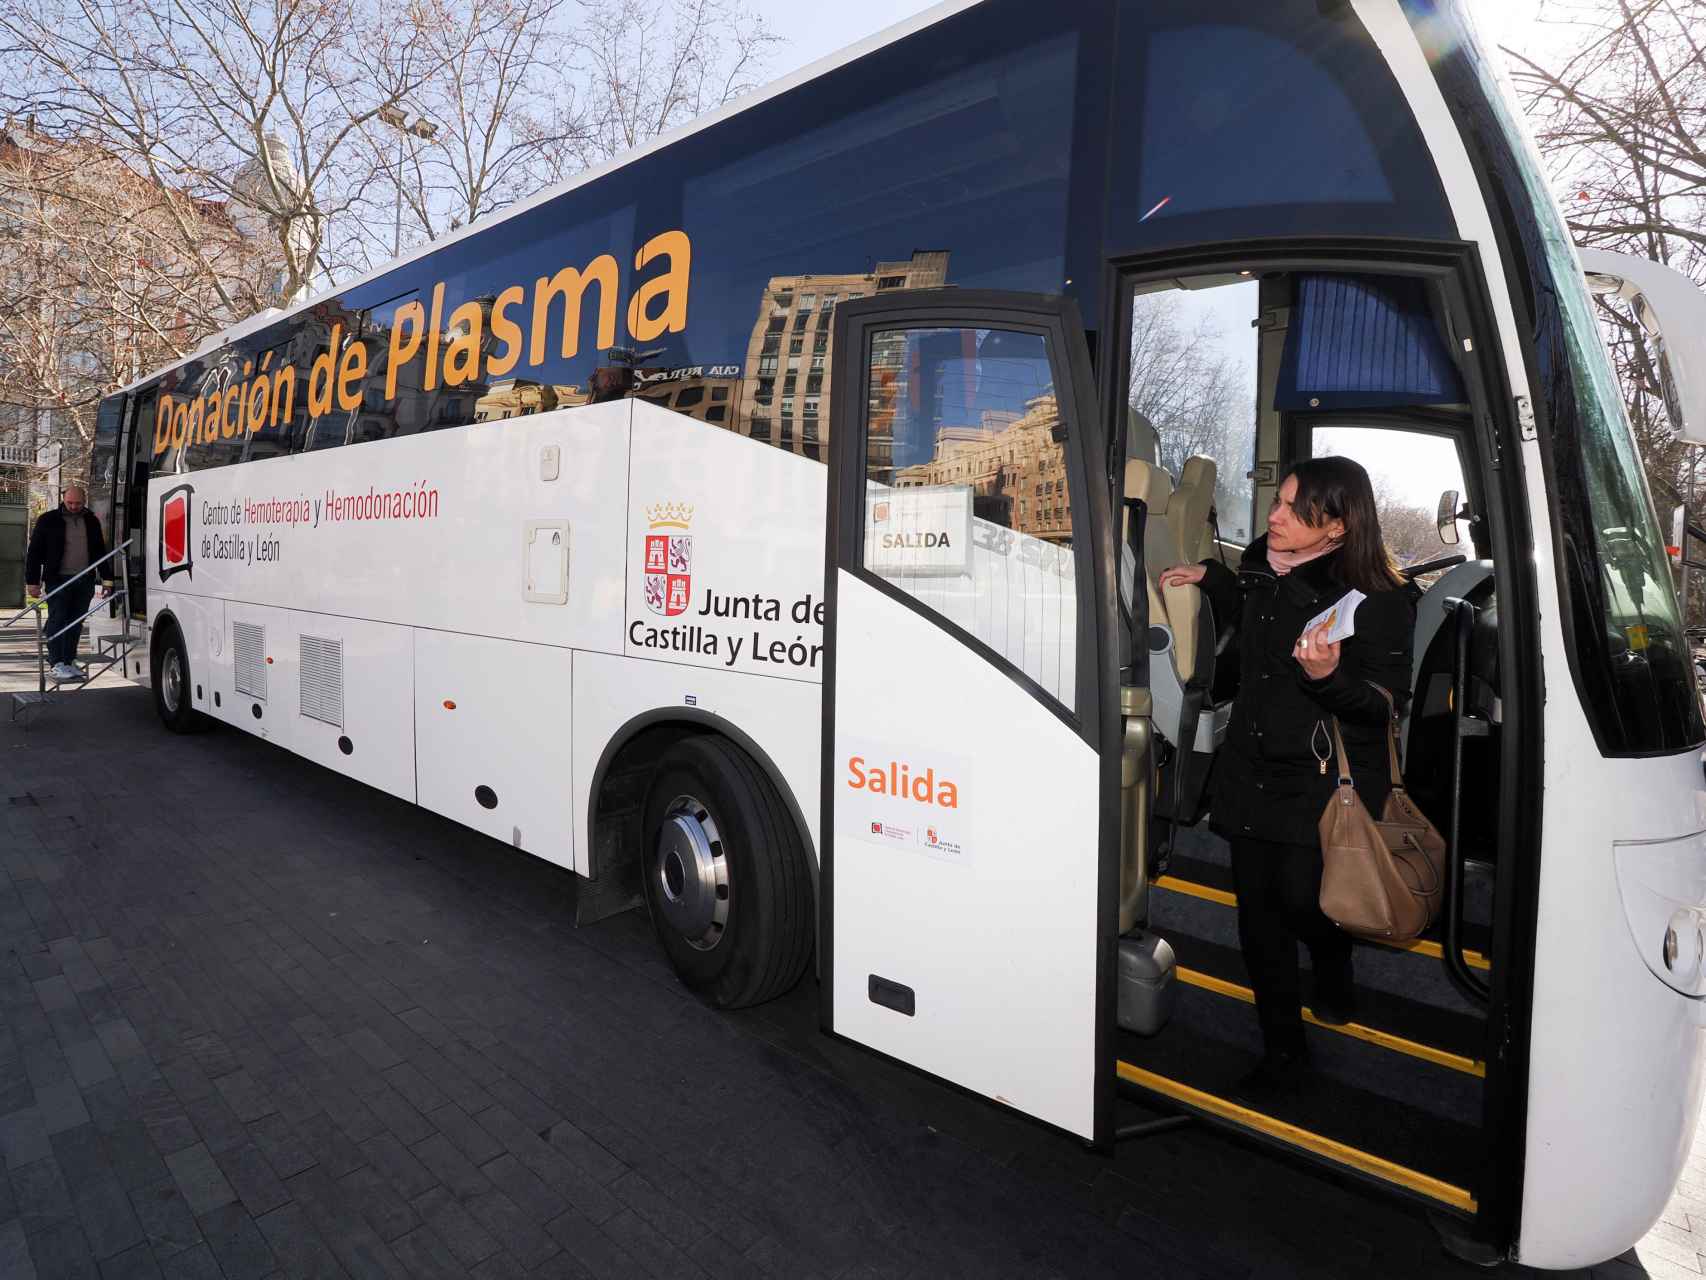 Imagen de la nueva unidad móvil de donación de plasma, este lunes en Valladolid.